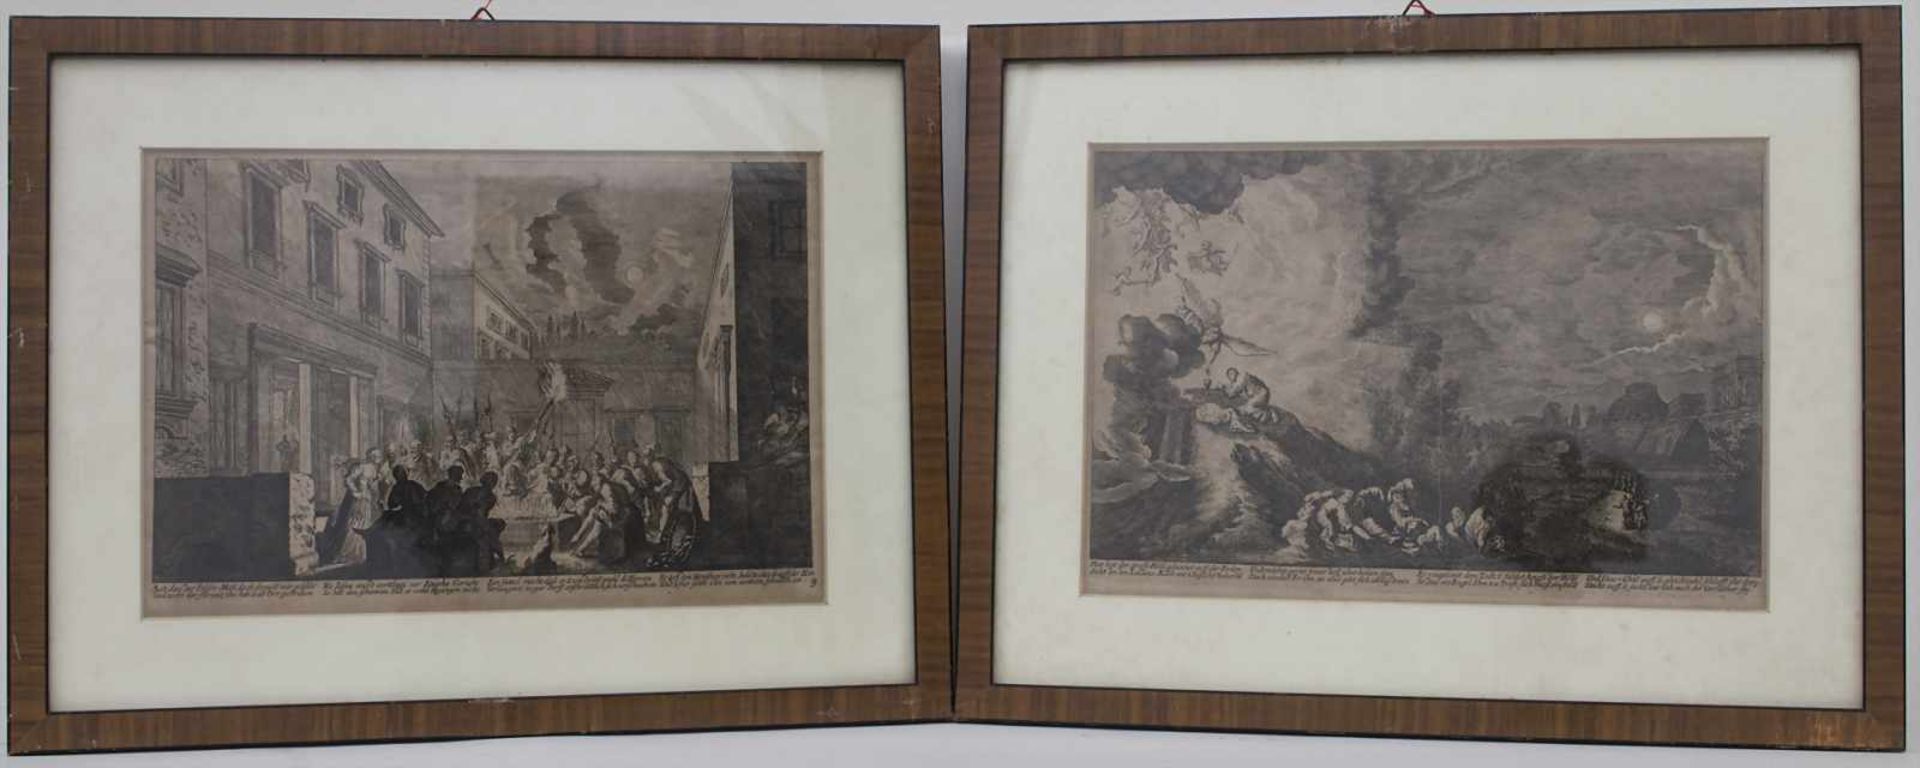 2 Kupferstiche mit biblischen Szenen / 2 copper engravings with biblical scenesTechnik: Kupferstiche